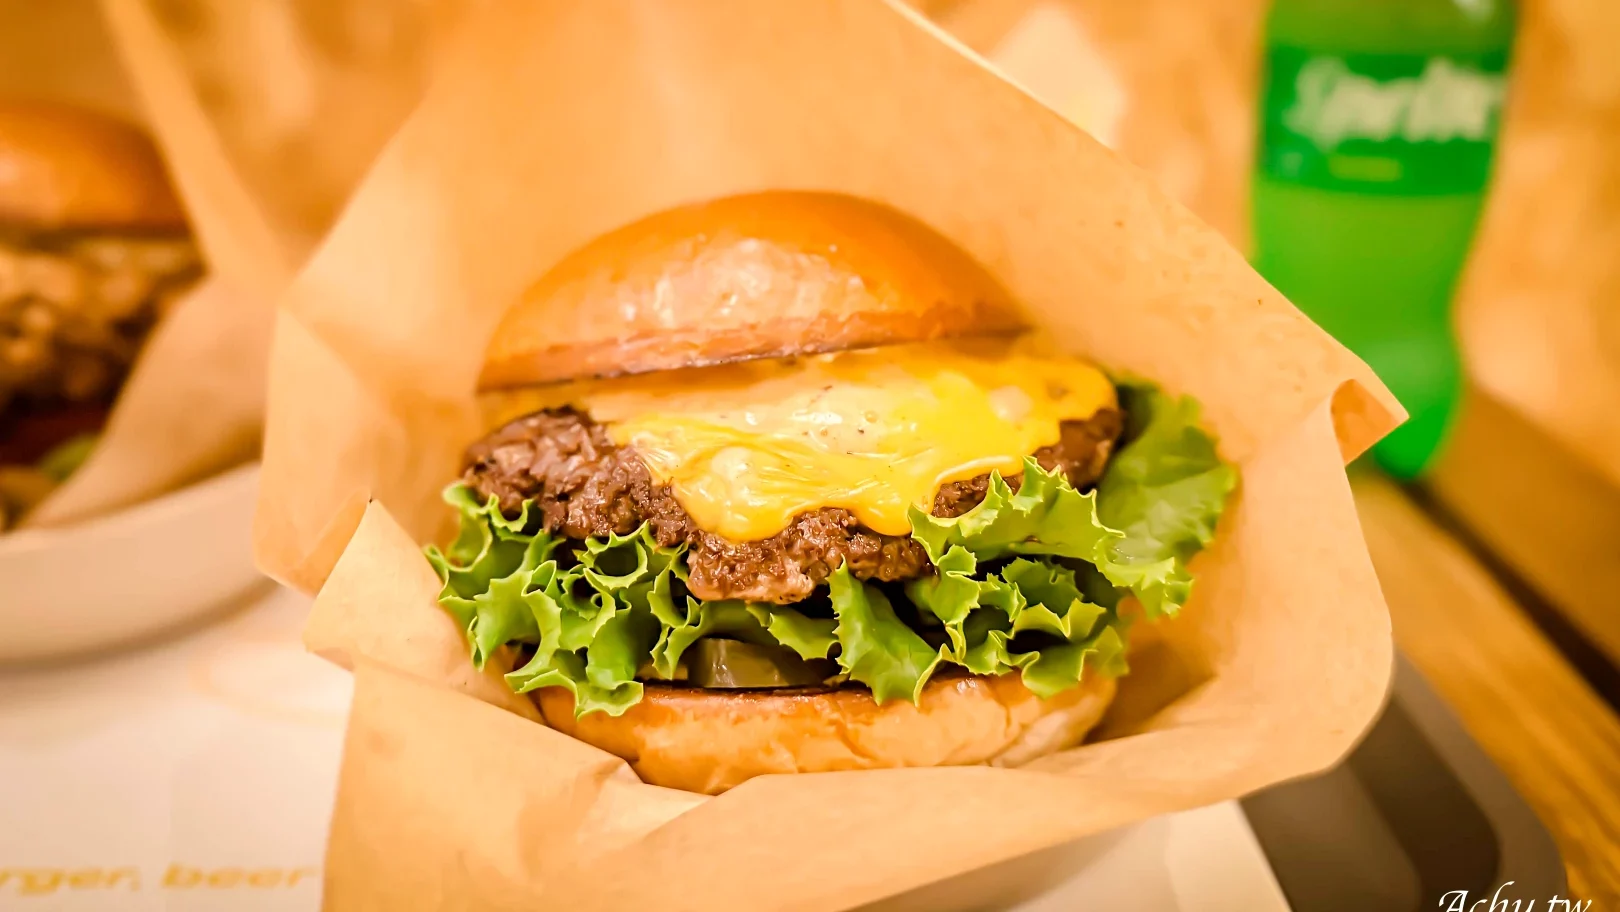 網站近期文章：【內湖美食】Burger Behind The Door 手作美式漢堡 藏在門後般的驚喜美味 (菜單)